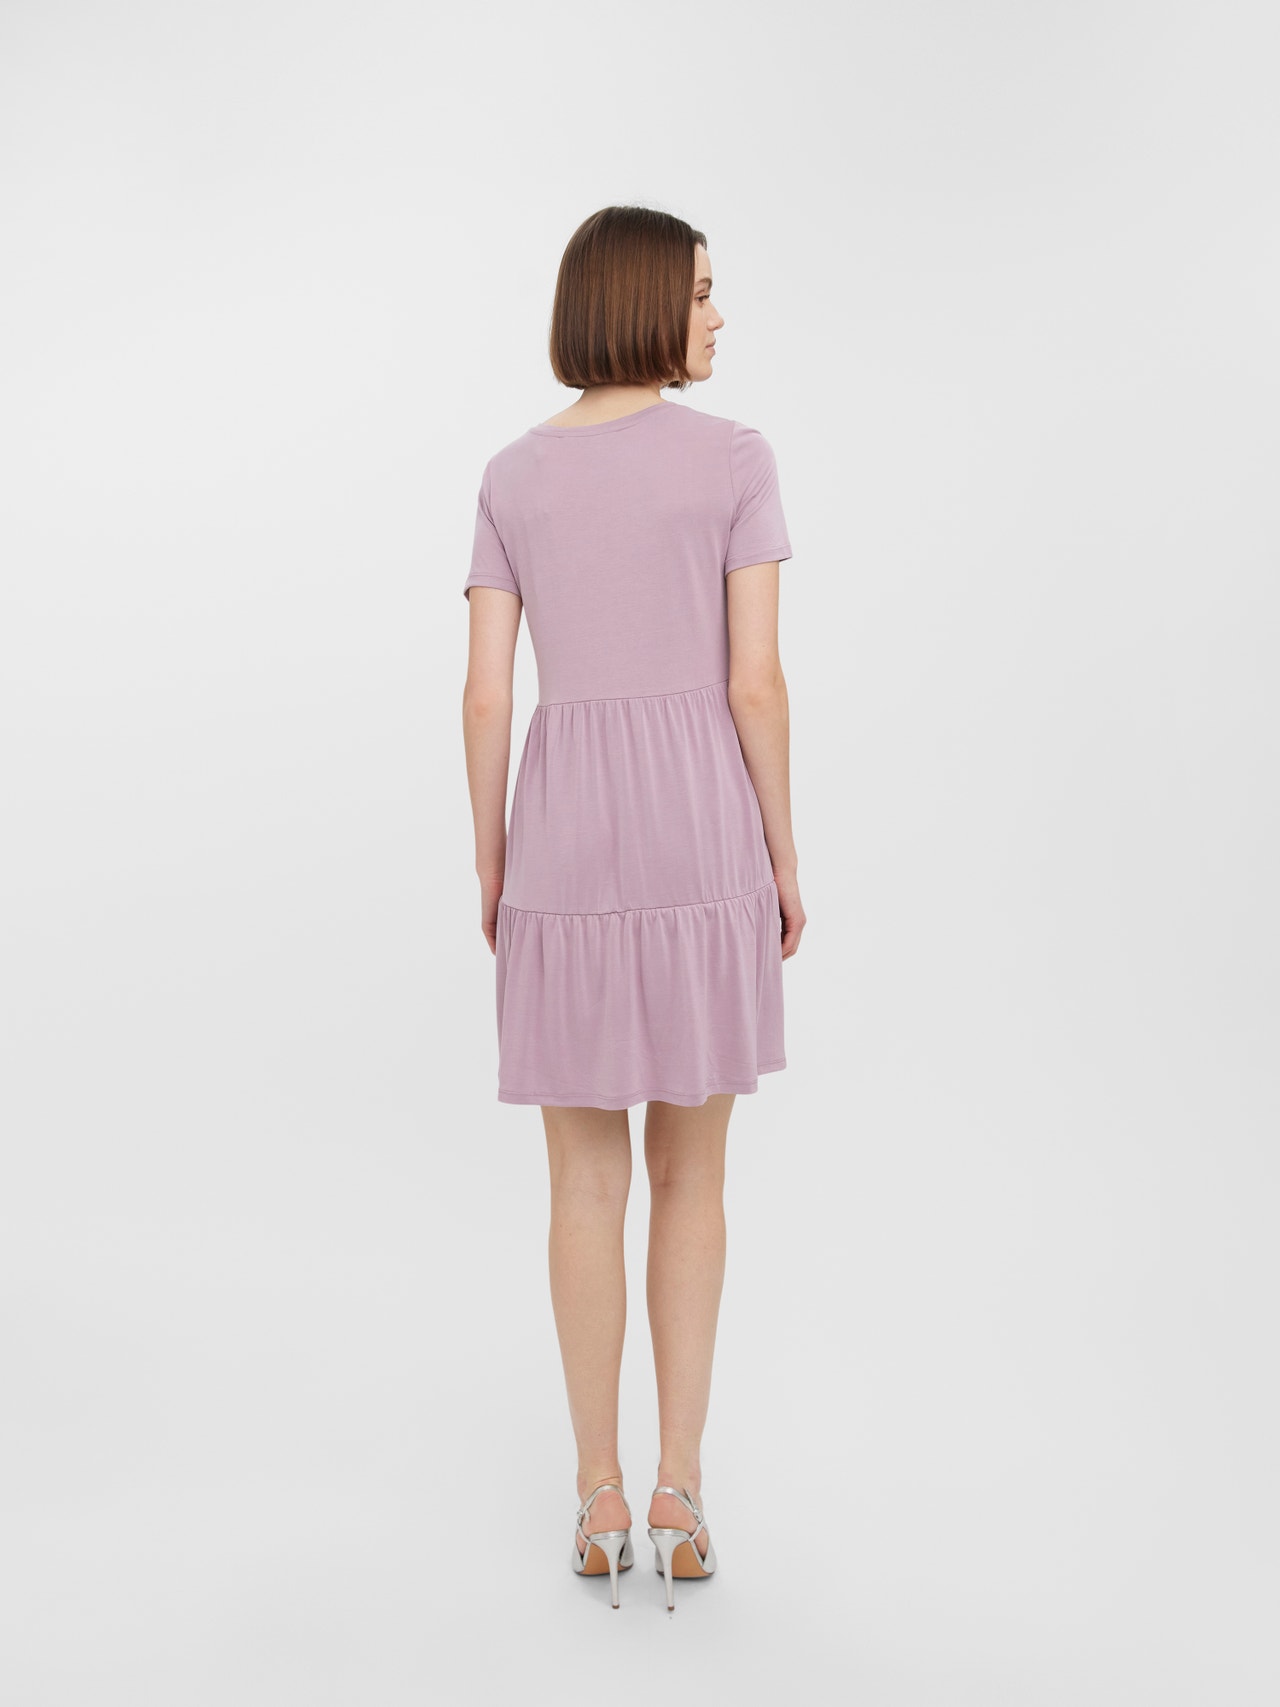 Vero Moda VMFILLI Short dress -Elderberry - 10248703